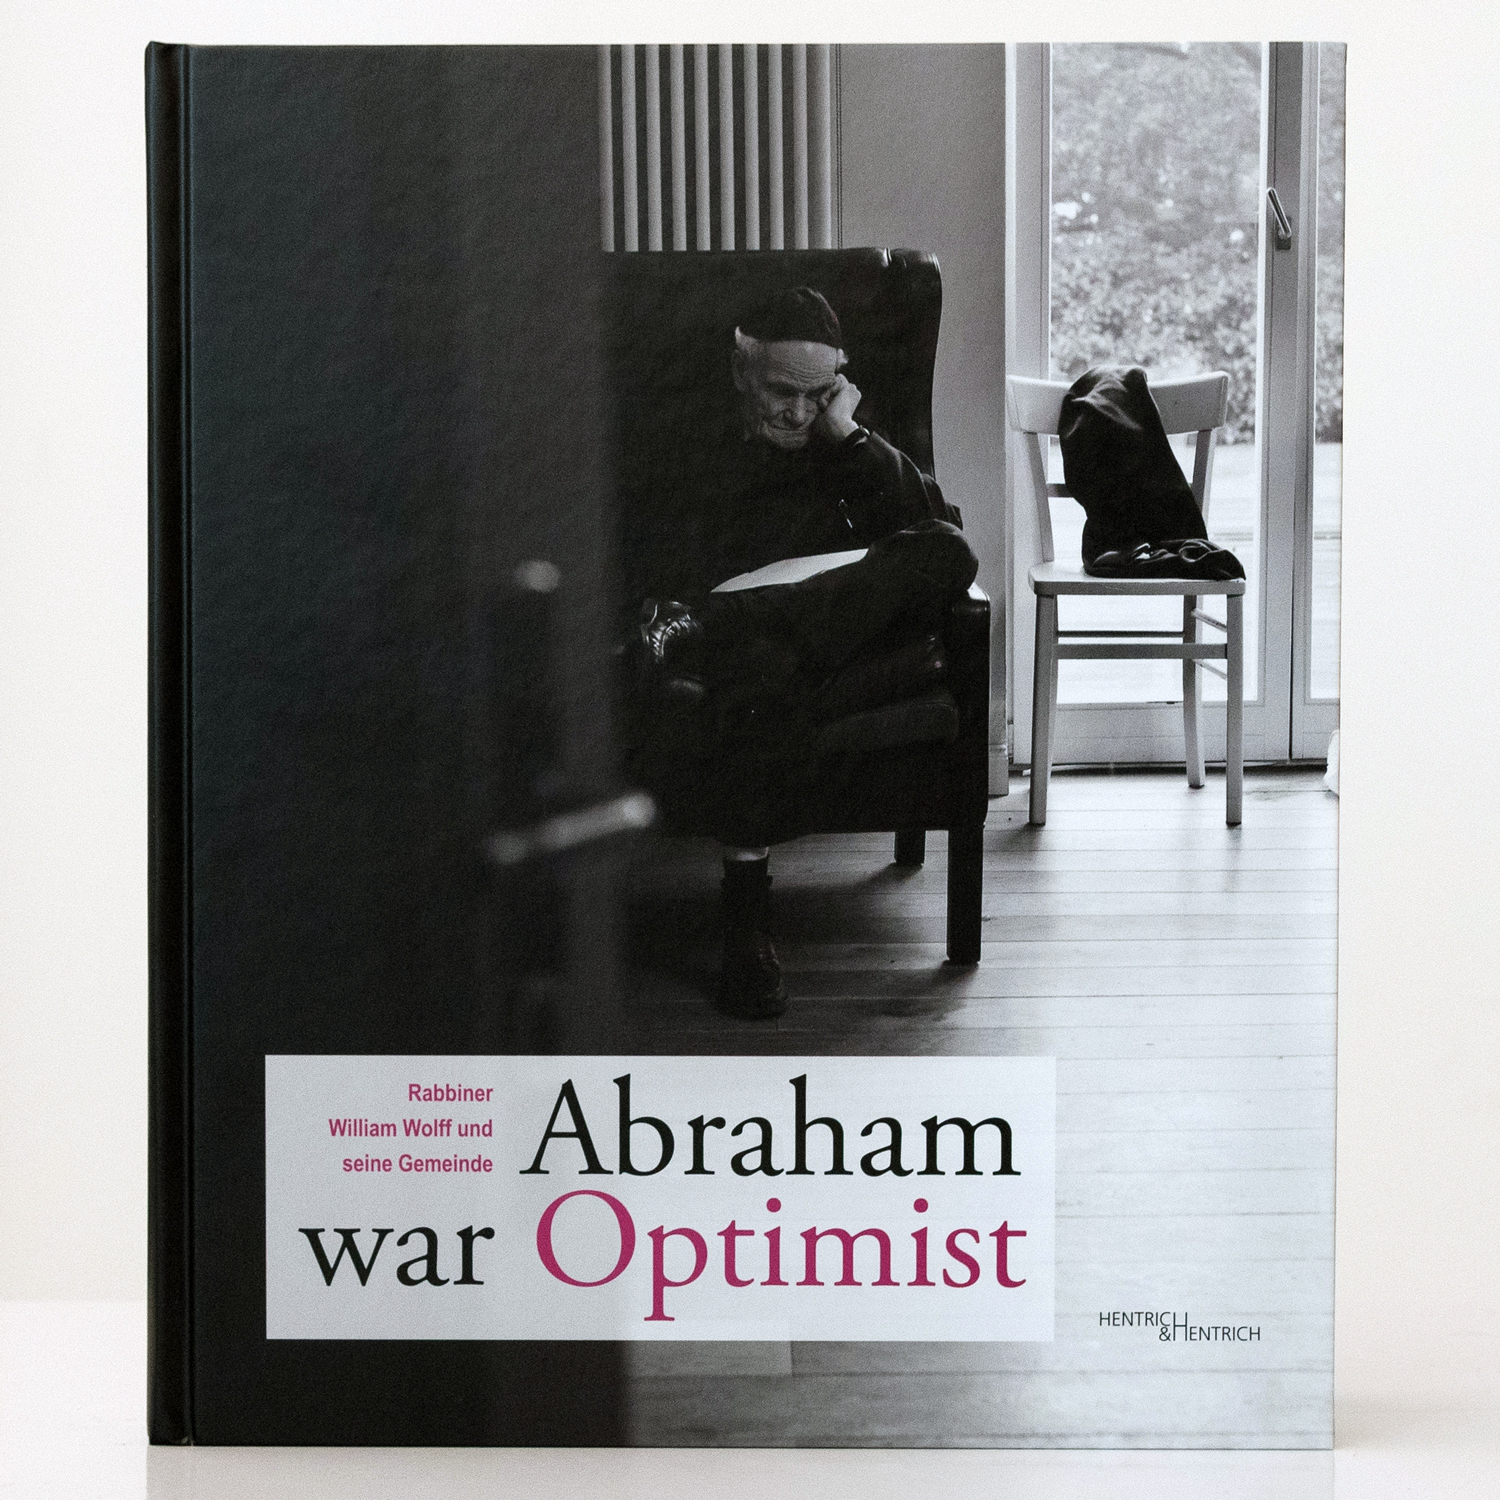 Abraham war Optimist – Rabbiner William Wolff und seine Gemeinde
Manuela Koska-Jäger, Hentrich & Hentrich, Berlin 2011